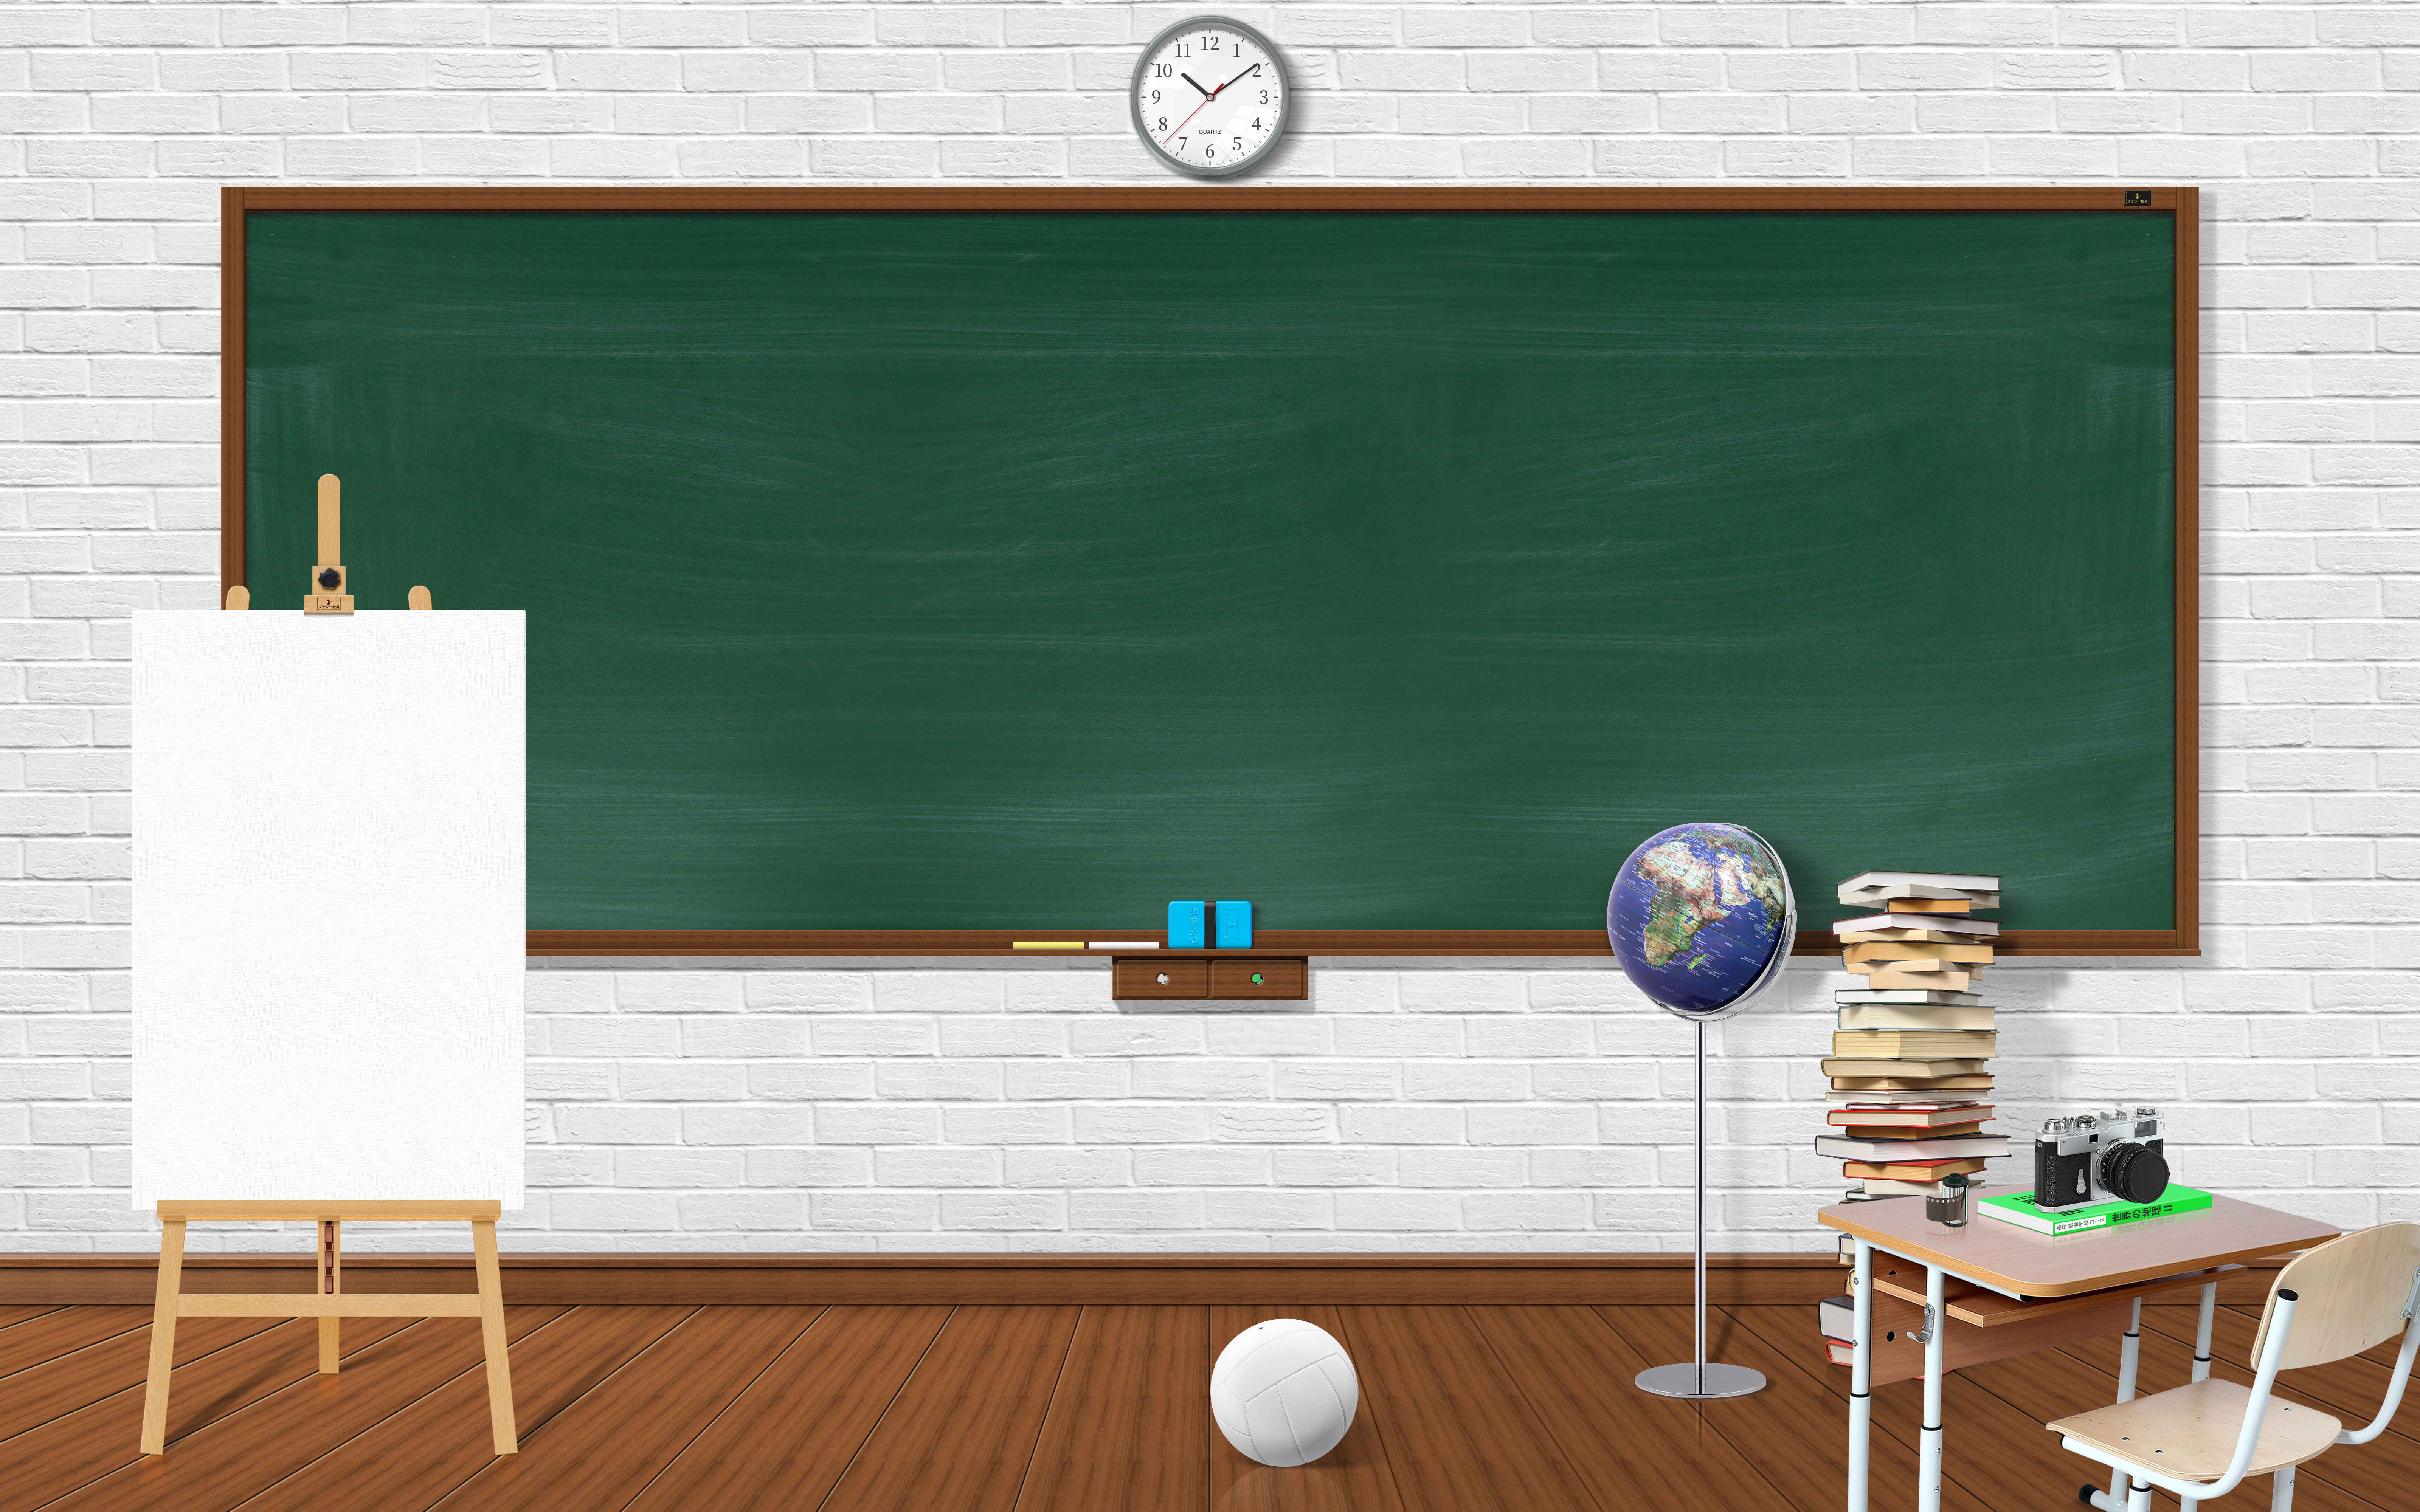 Classroom Chalkboard Books 6400x4000